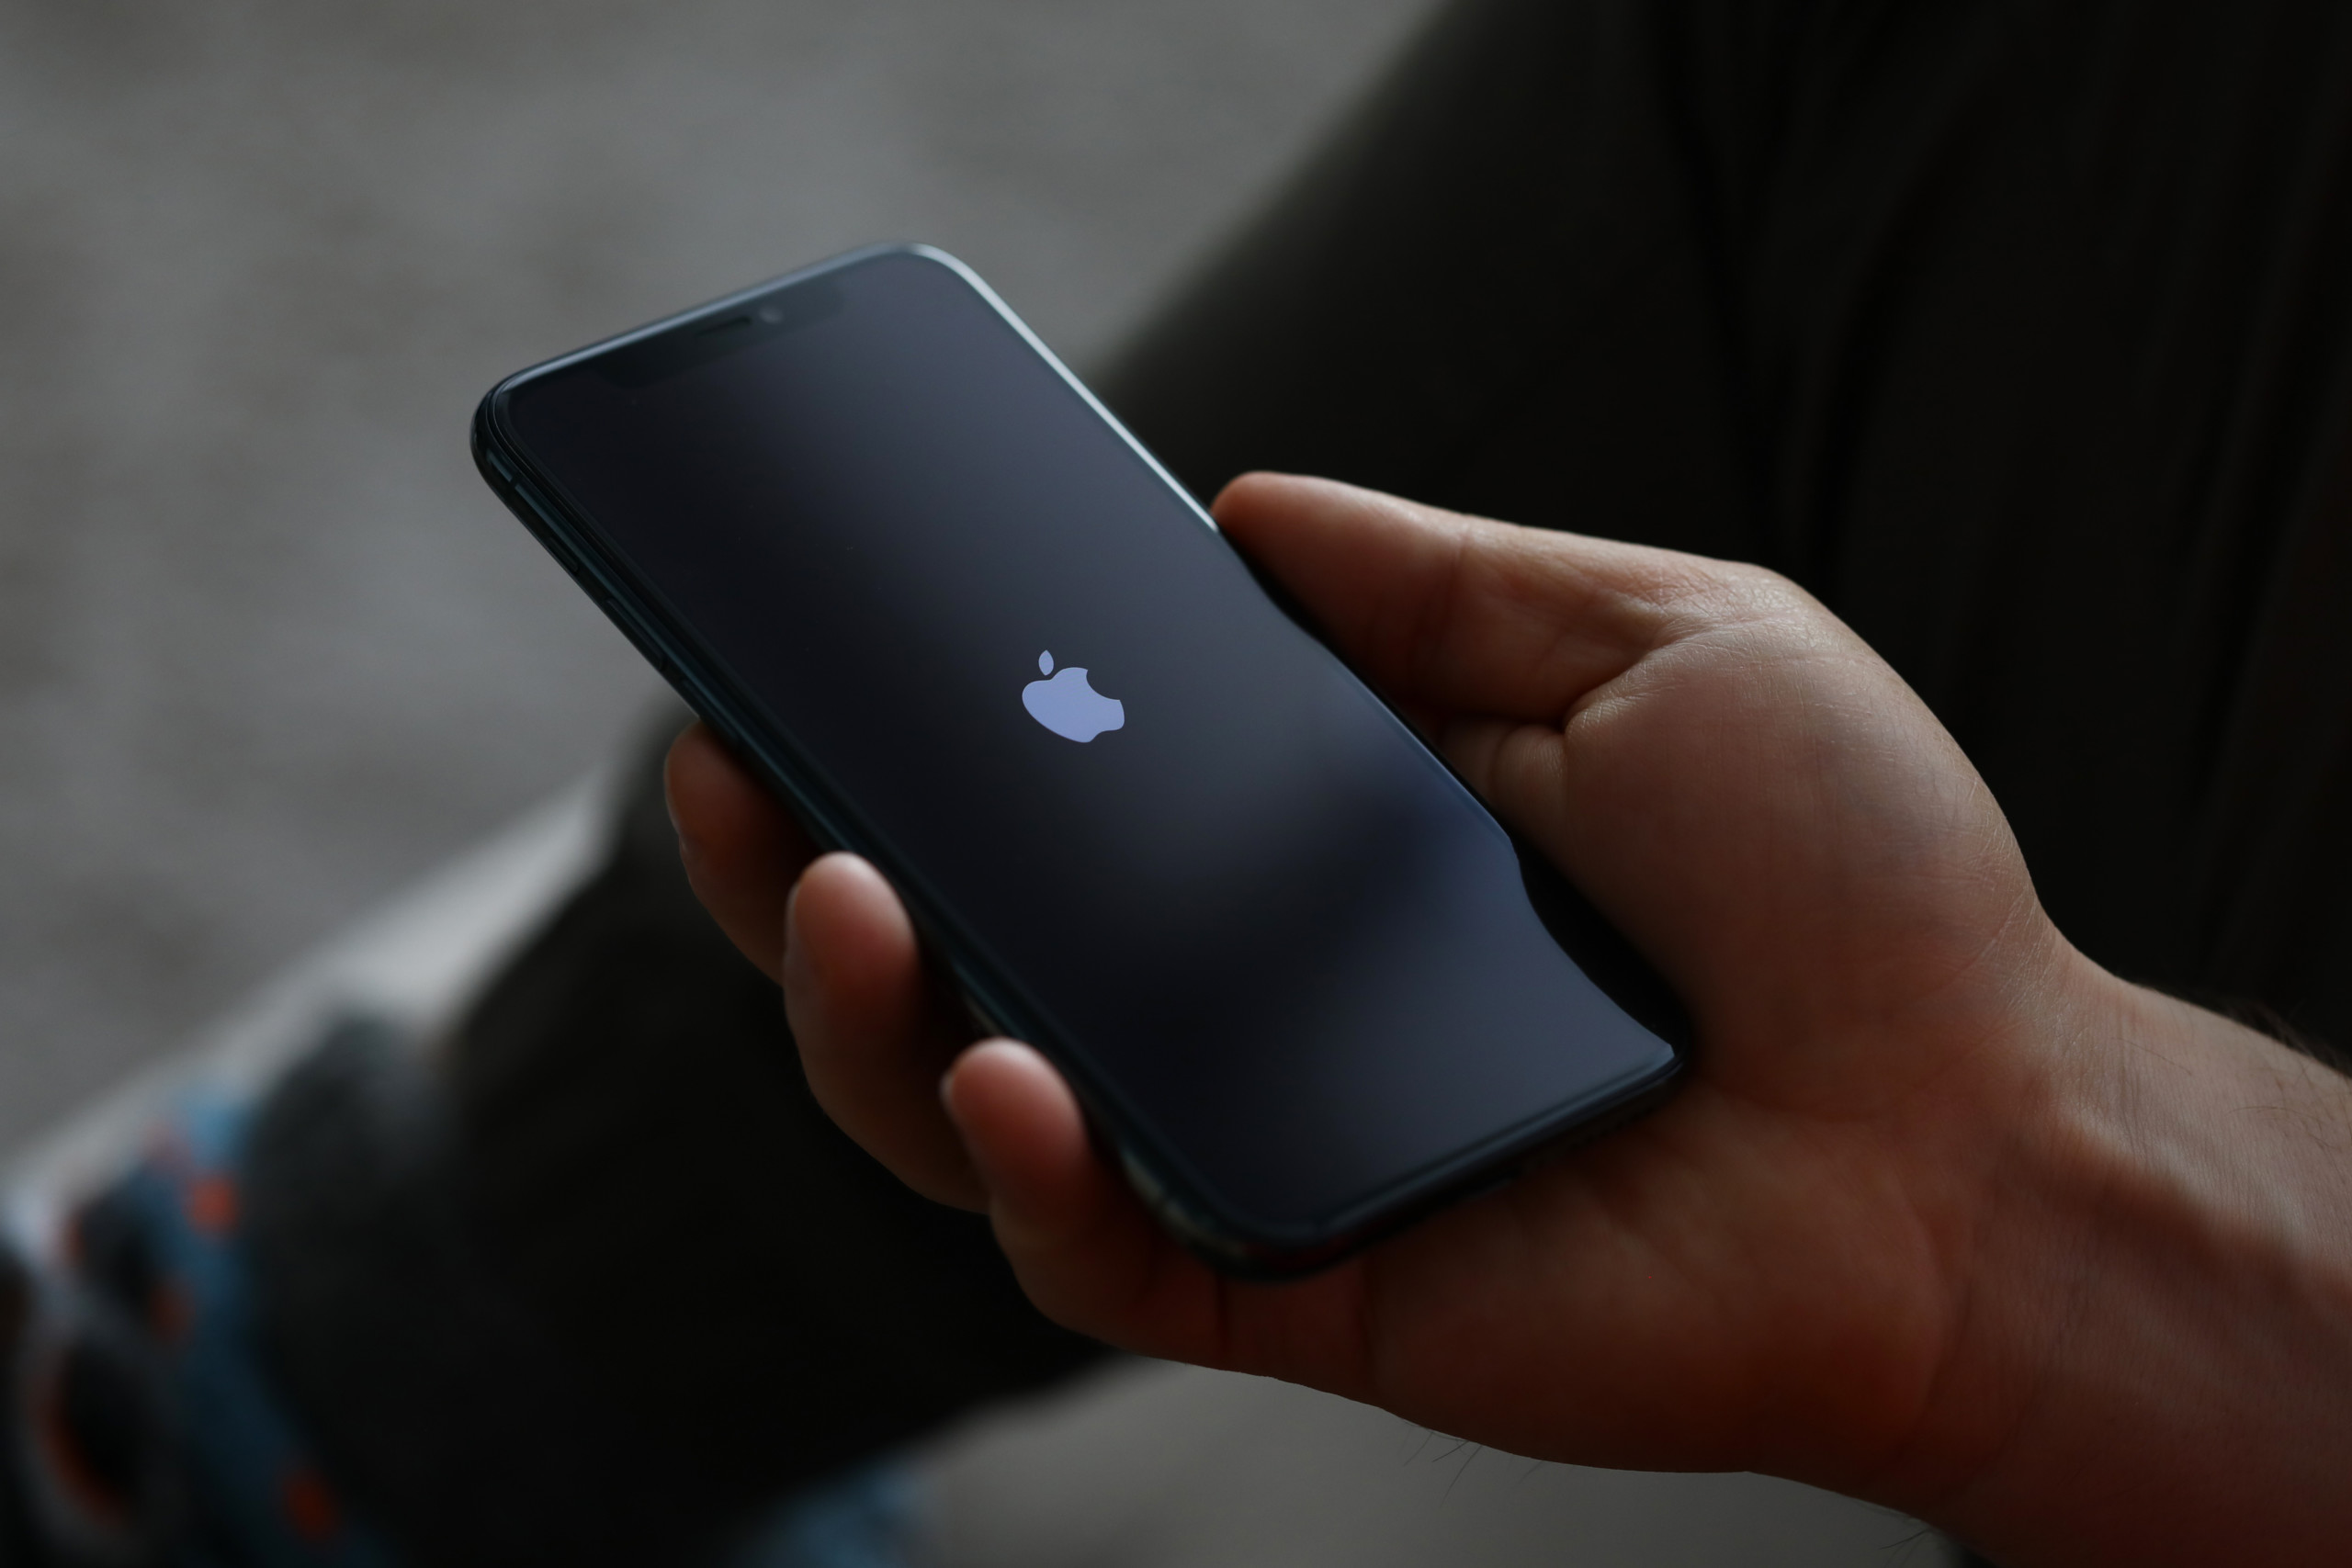 Apple mit iPhone-Rabatten in China – schwächere Nachfrage befürchtet?